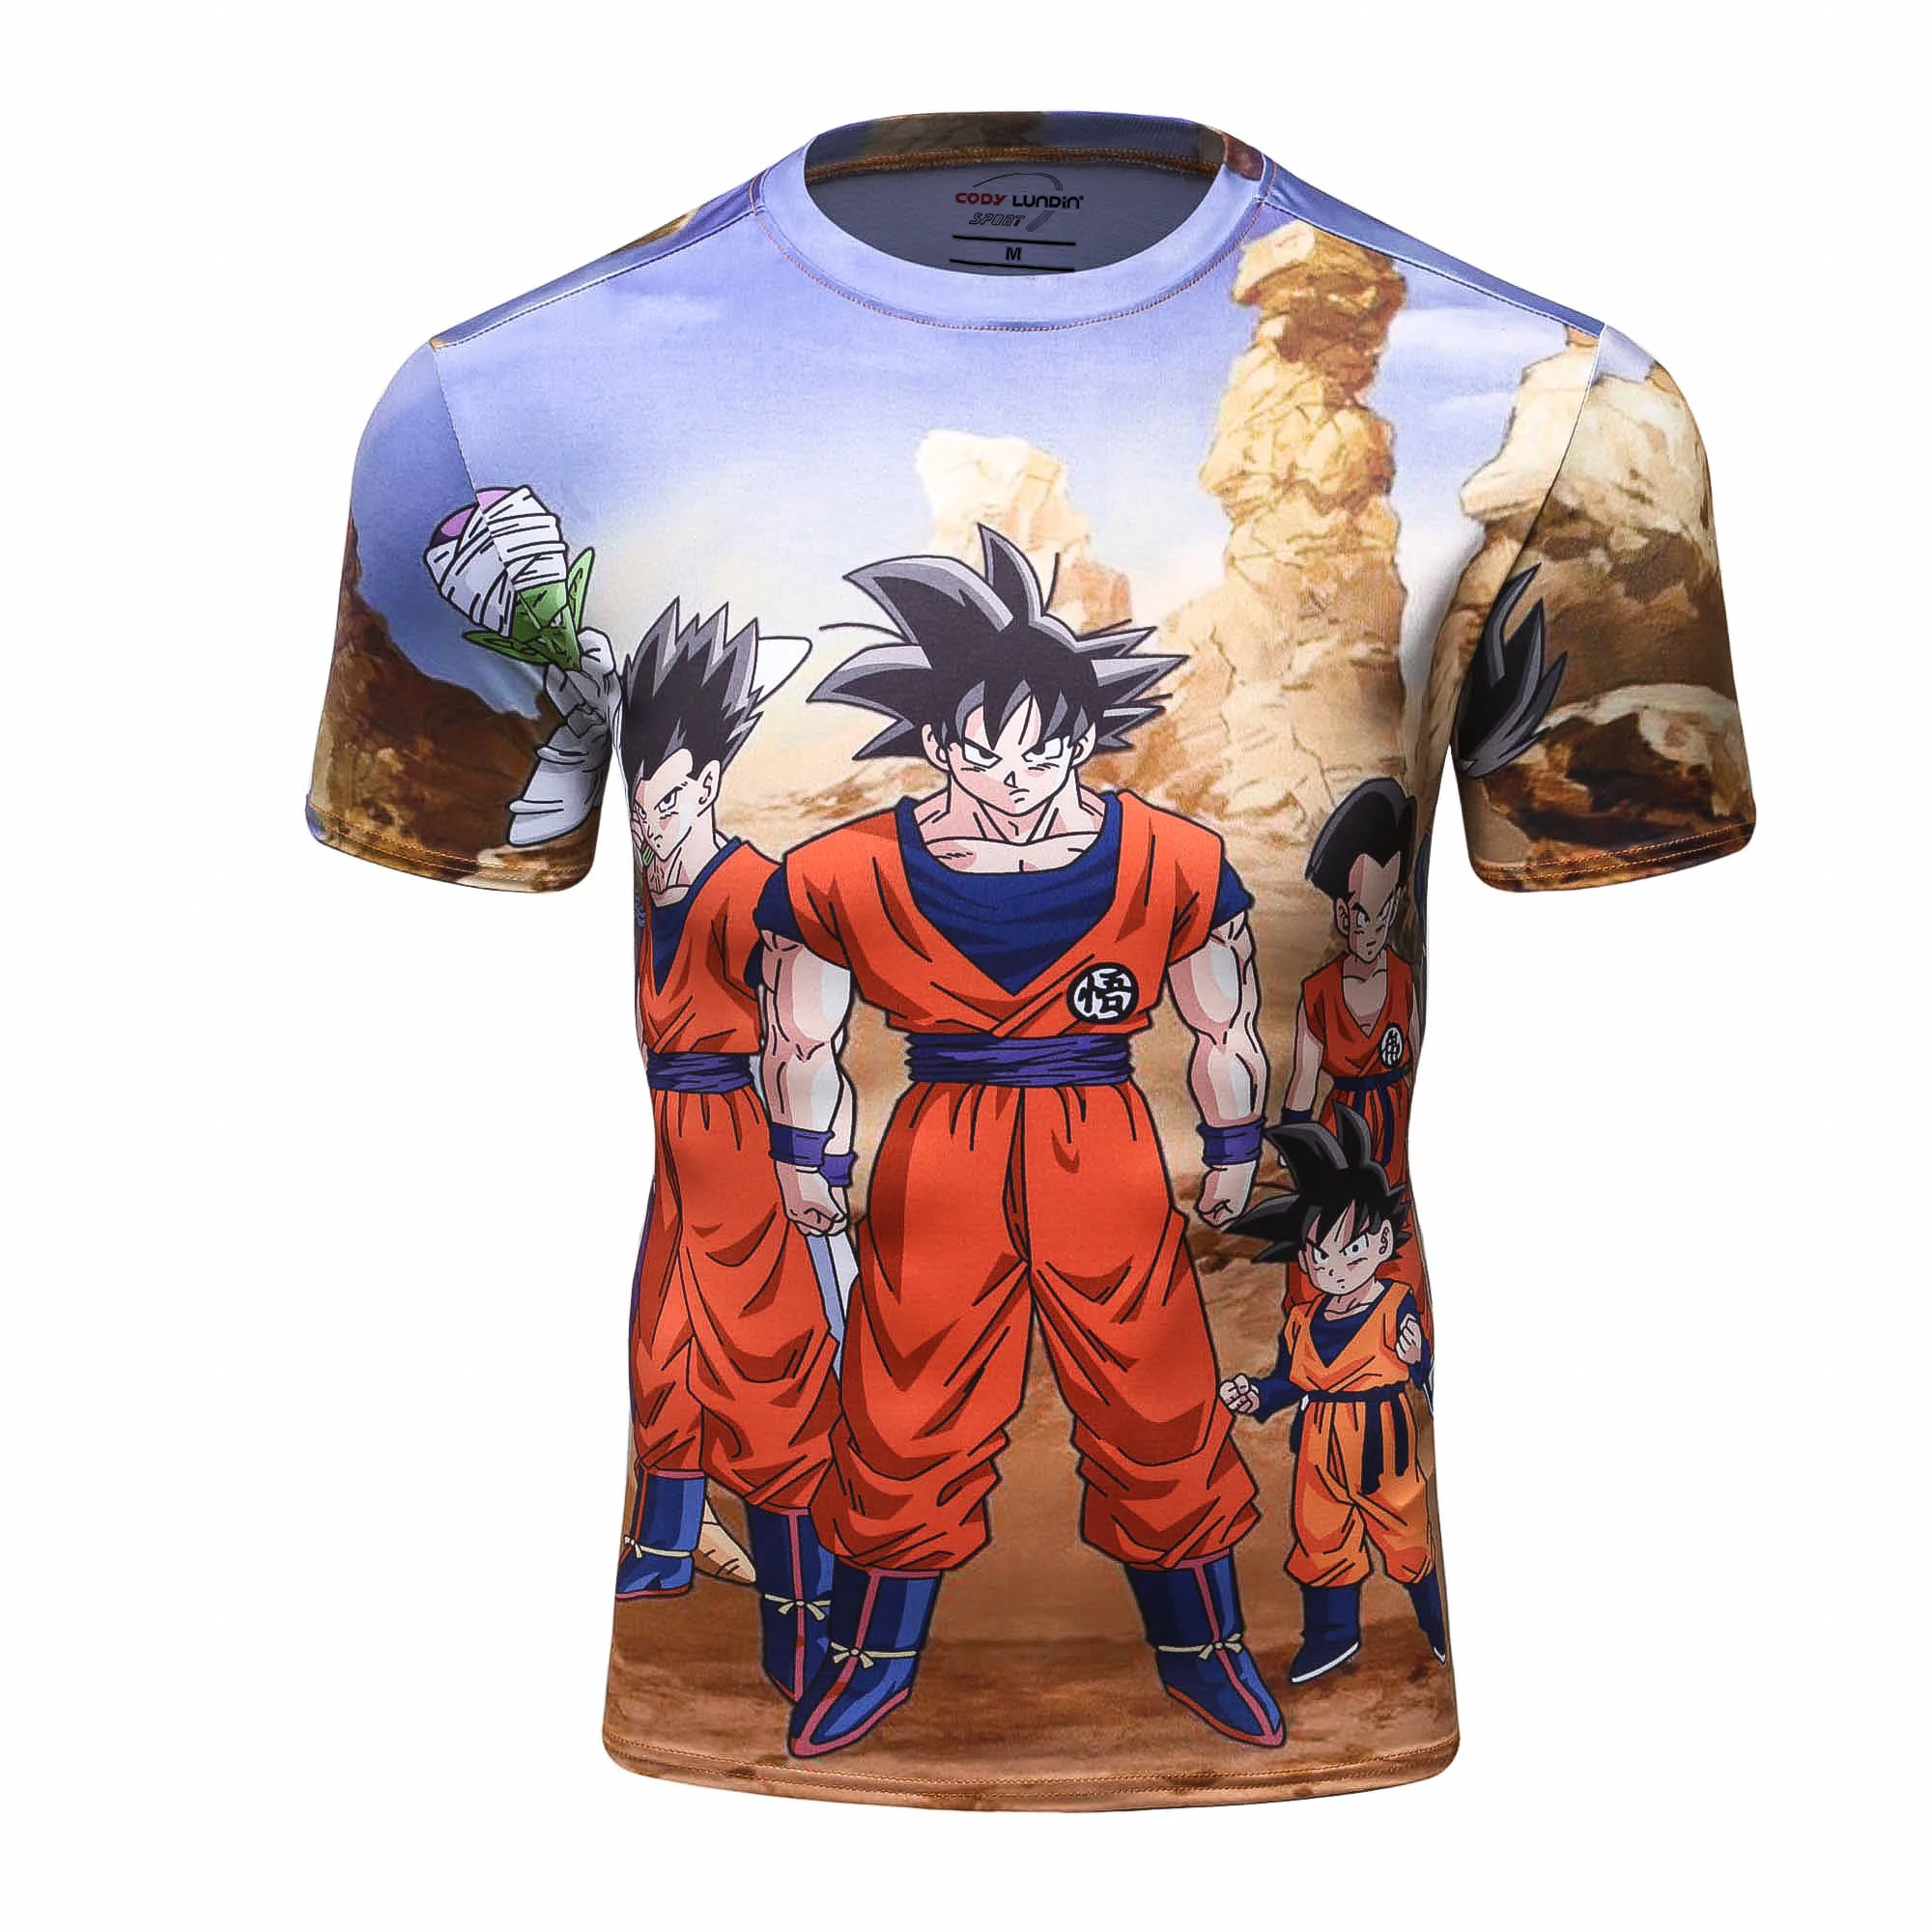 

Cody Lundin Dragon Ball Clothing Goku Vegeta 3D Anime T Shirts